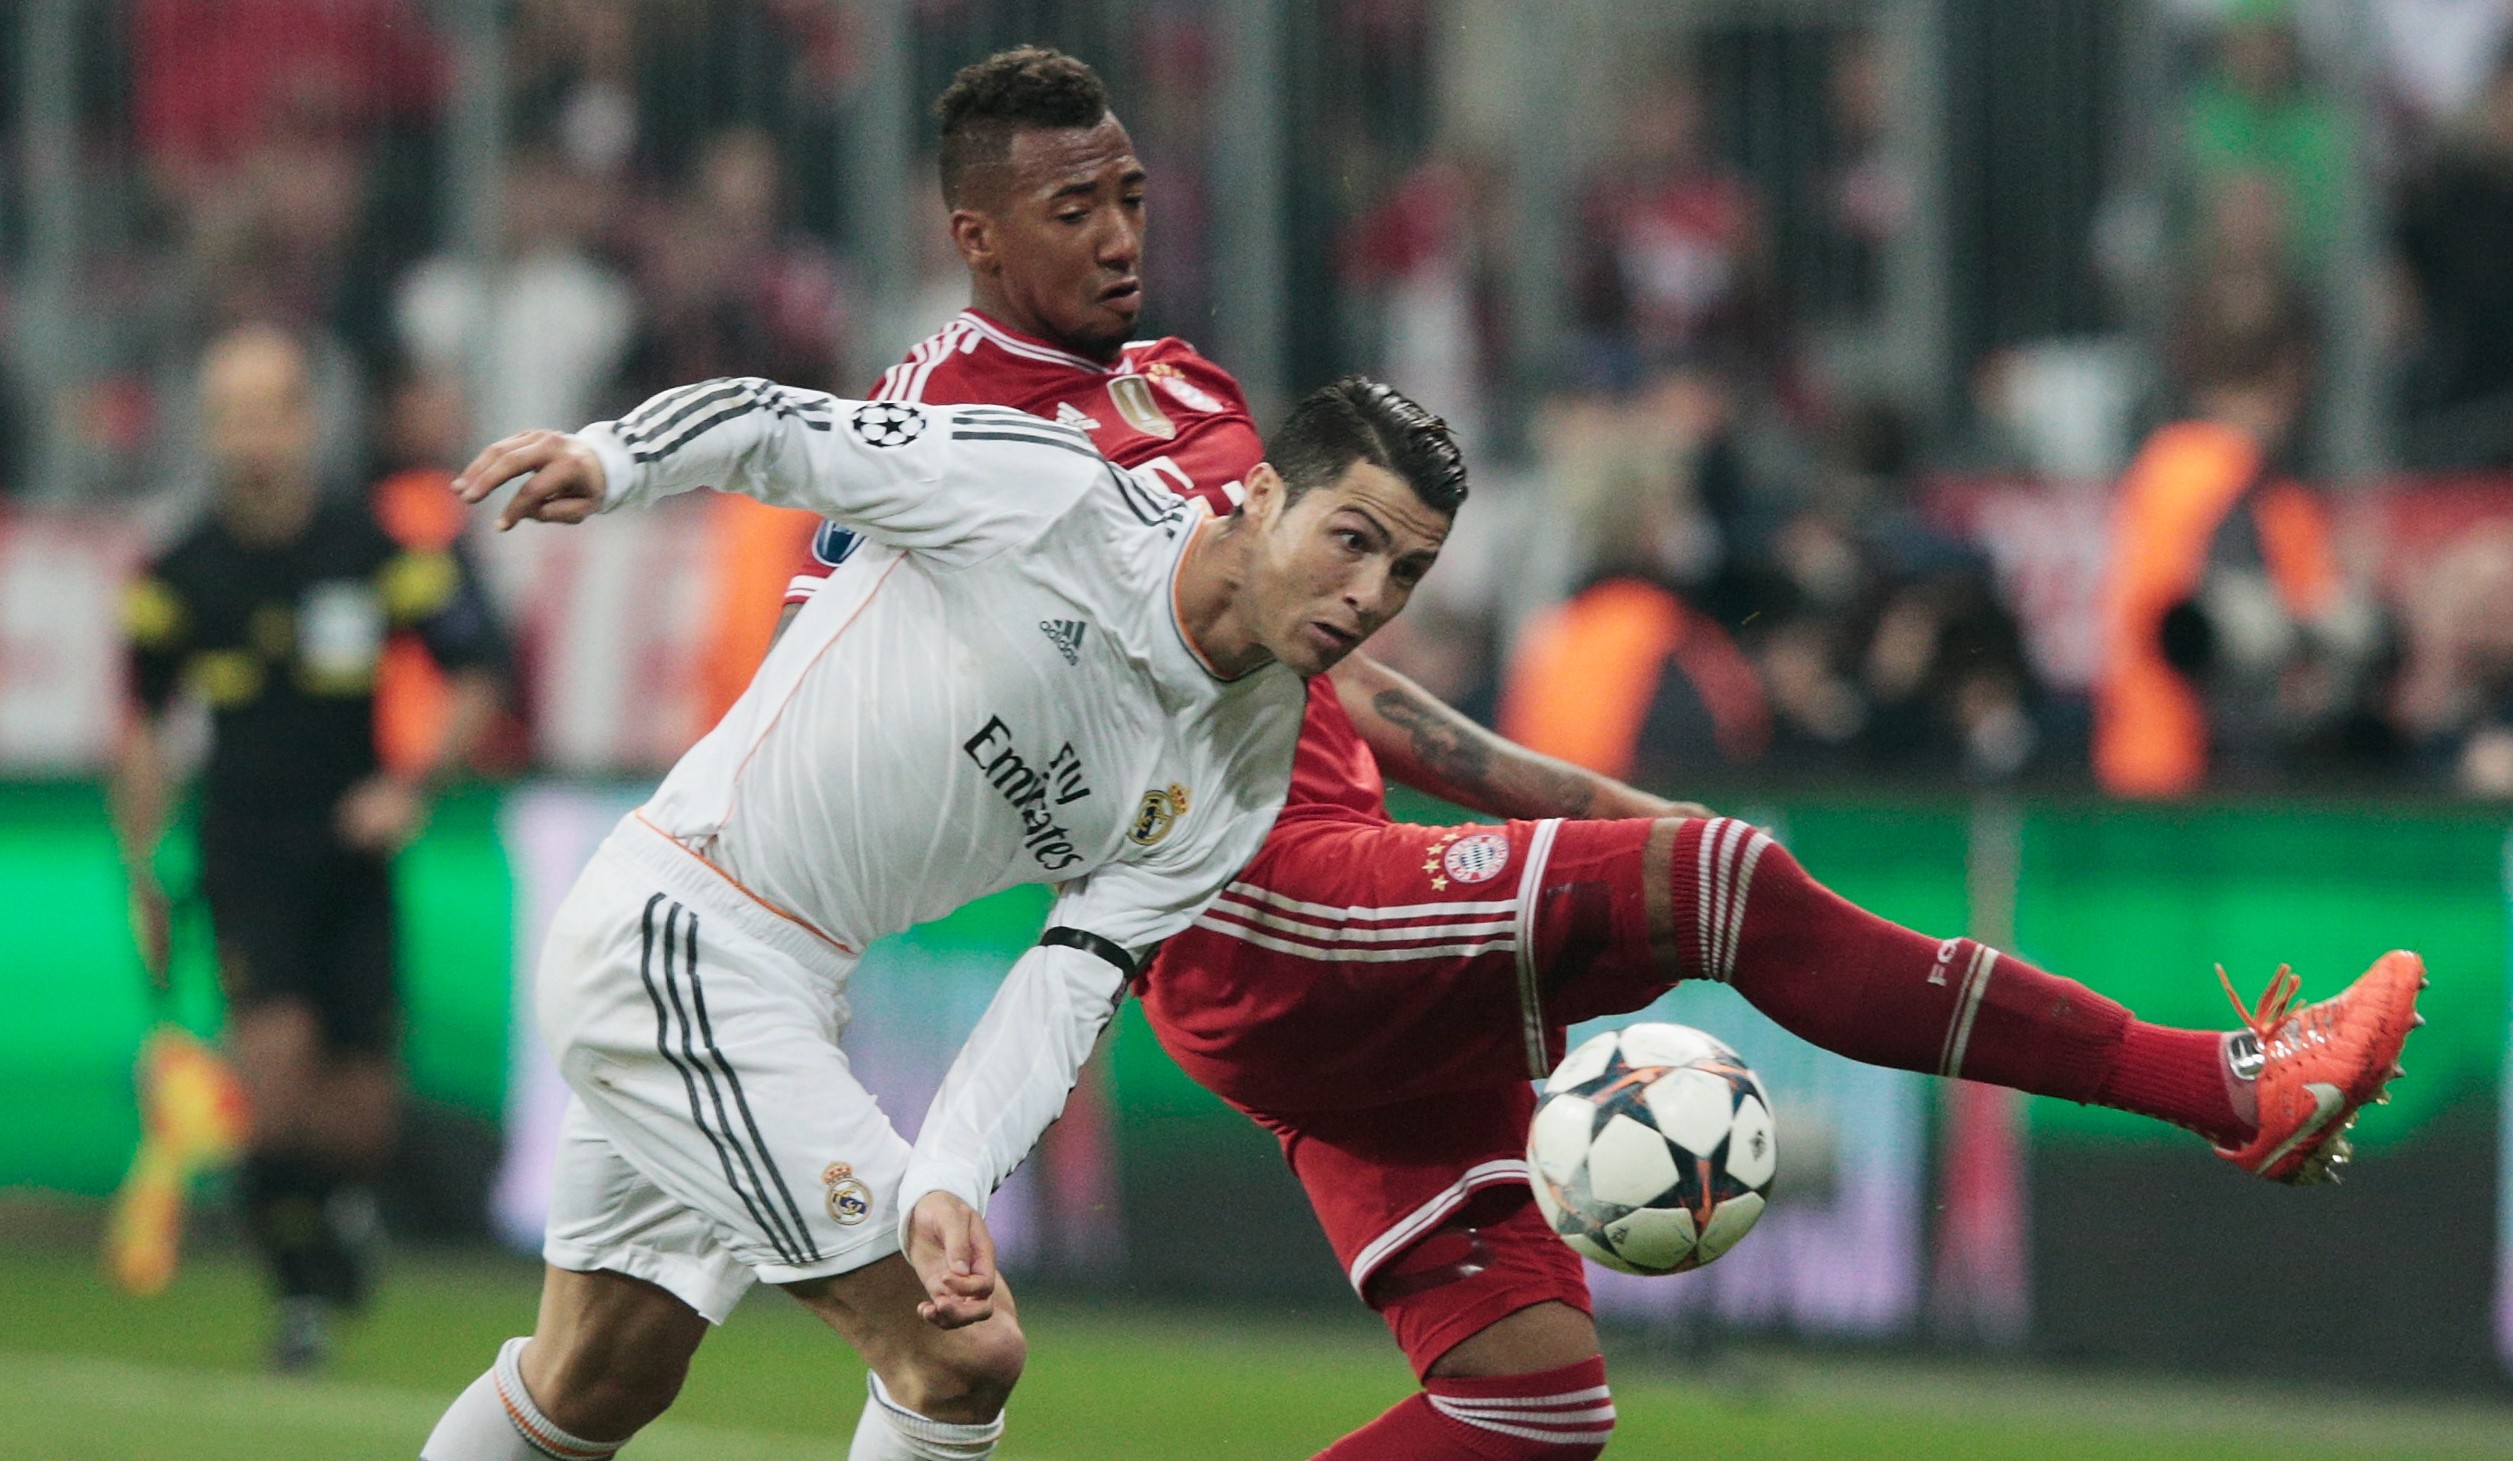 Spielen Boateng und Ronaldo bald gemeinsam beim FC Bayern München?